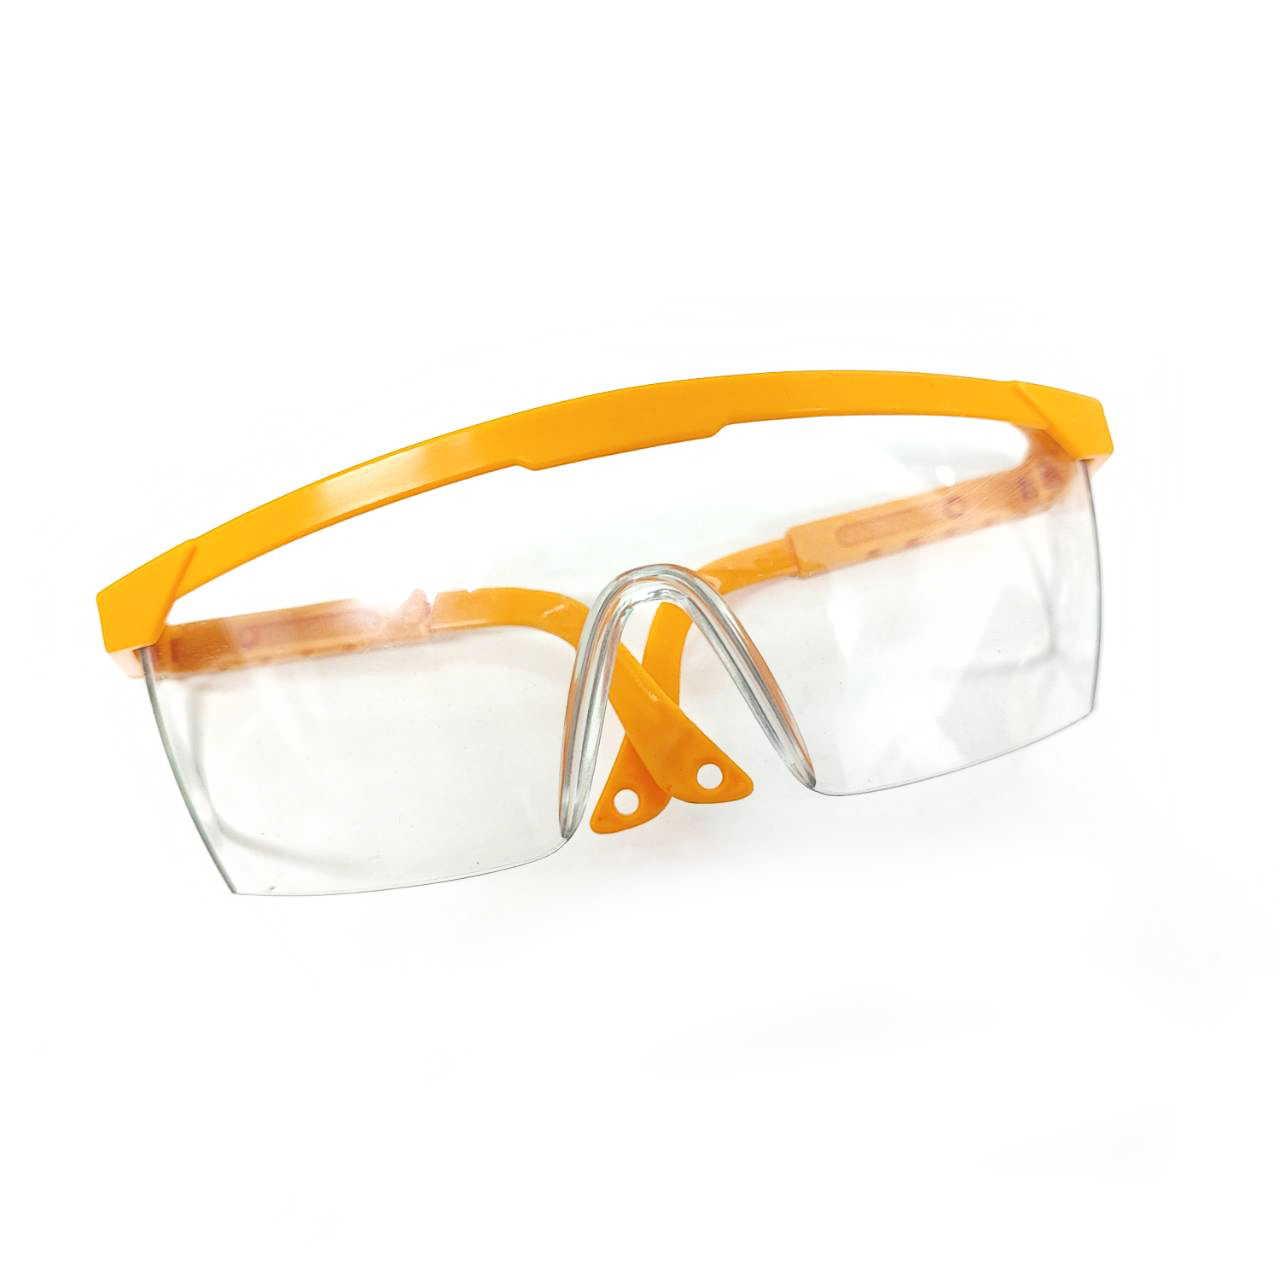 รายละเอียดเพิ่มเติมเกี่ยวกับ Goggles แว่นตาเซฟตี้(เลนส์ใส) แว่นตานิรภัย-ขาแว่นปรับความยาวได้ แว่นตากันลม กันสะเก็ด  แว่นตัดหญ้า ป้องกันสเก็ด ฝุ่นละออง สีใสไม่เป็นฝ้า